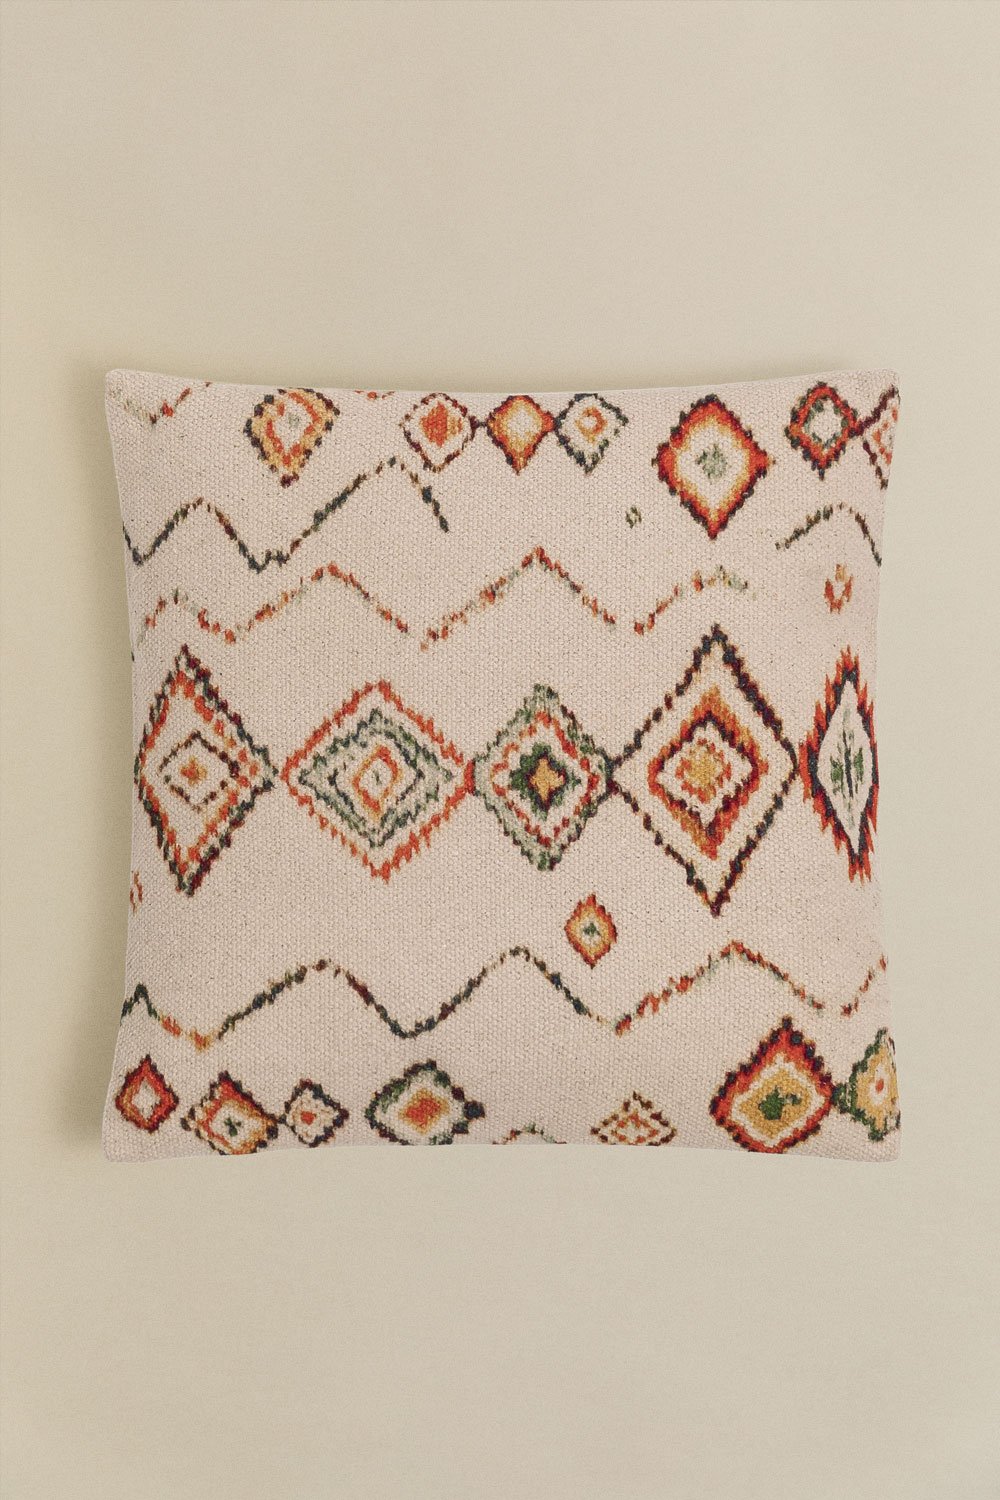 Cuscino quadrato in cotone (45x45 cm) Nilai, immagine della galleria 1